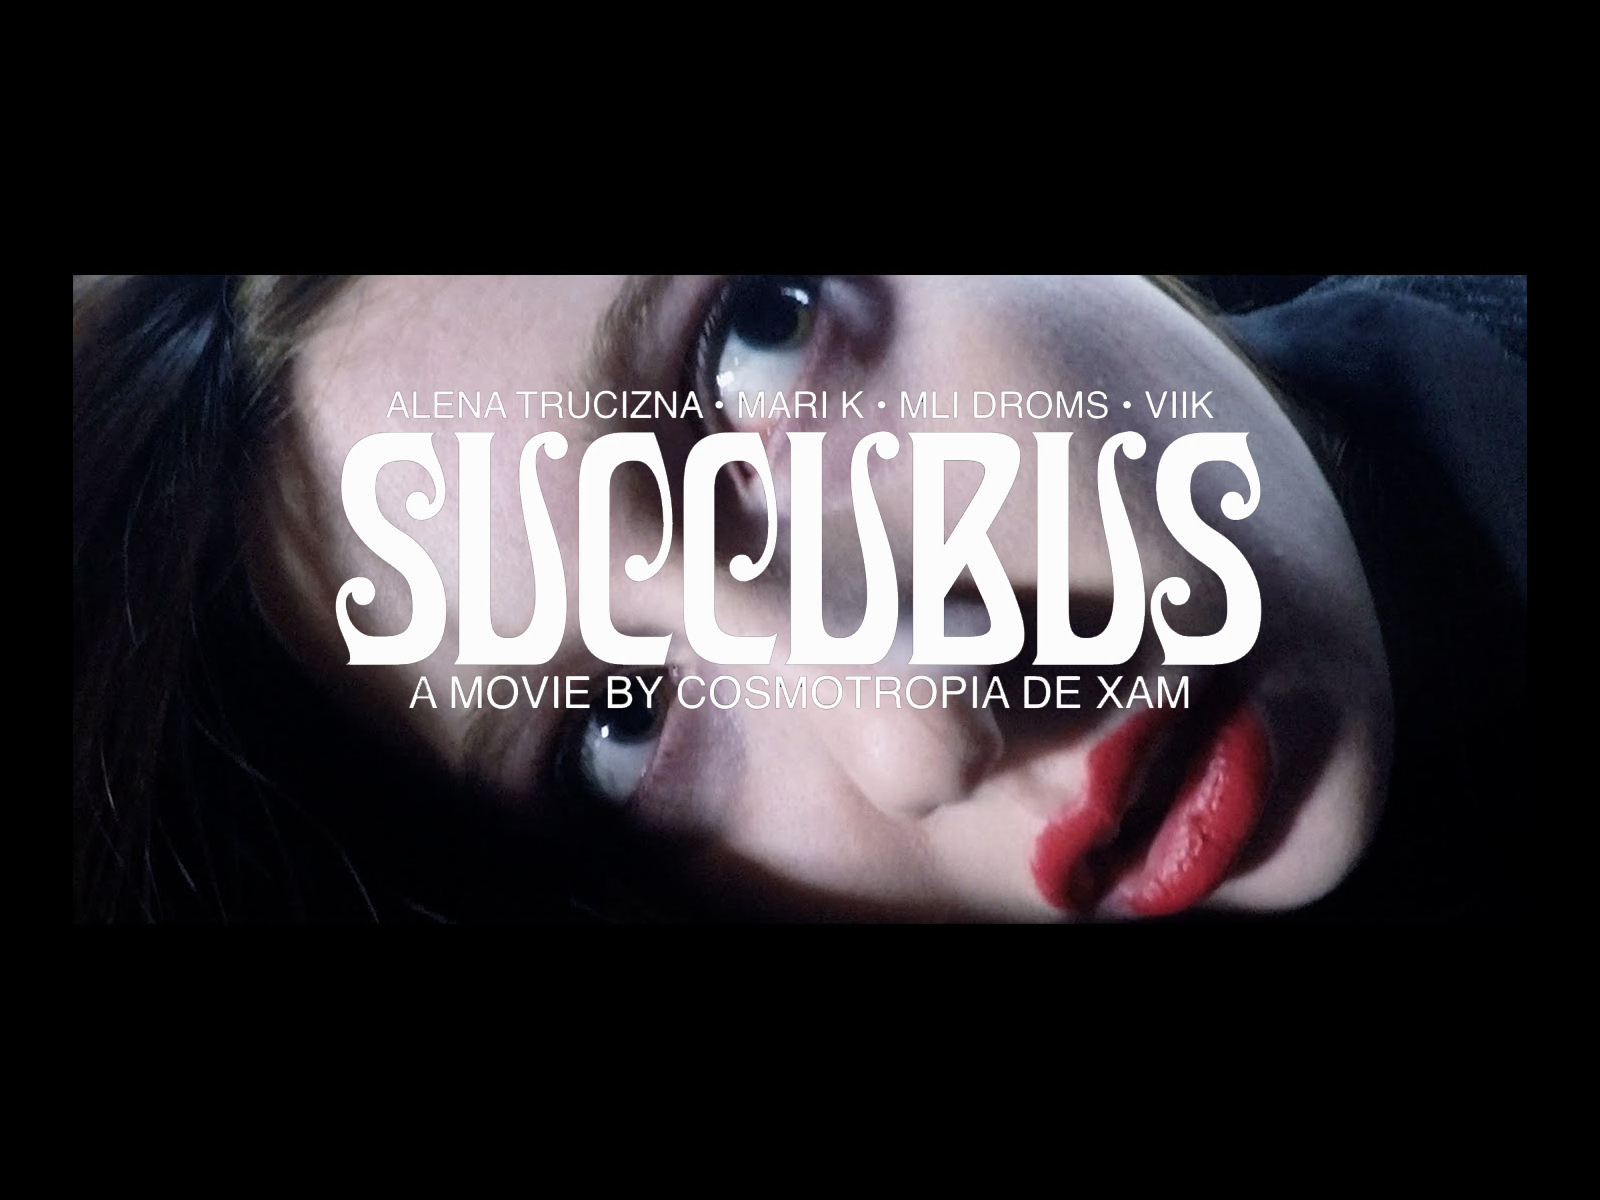 SUCCUBUS – A MOVIE by Cosmotropia de Xam